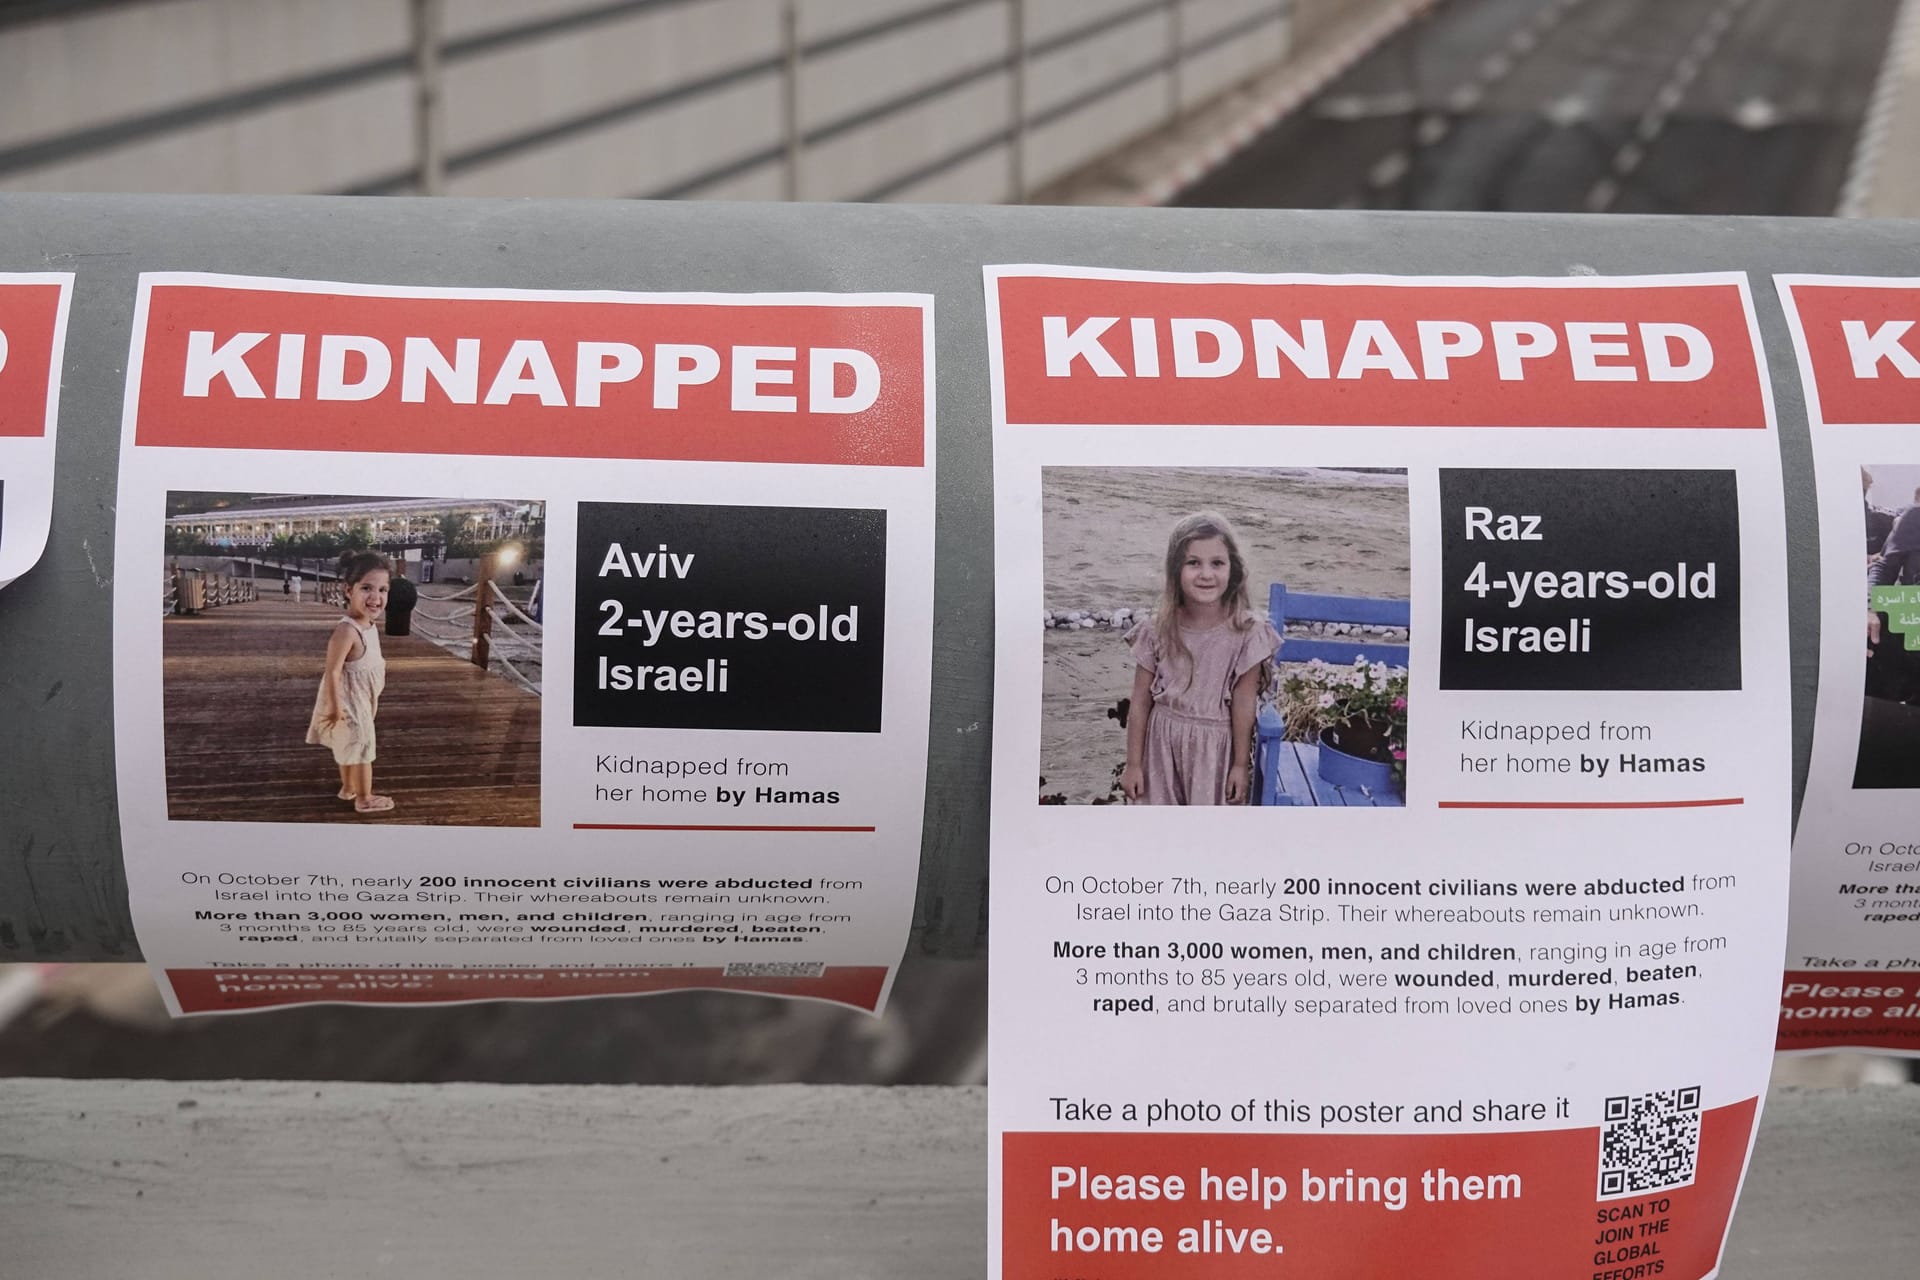 "Kidnapped": Mindestens 150 Menschen hat die Hamas entführt - darunter die Mädchen Raz und Aviv.